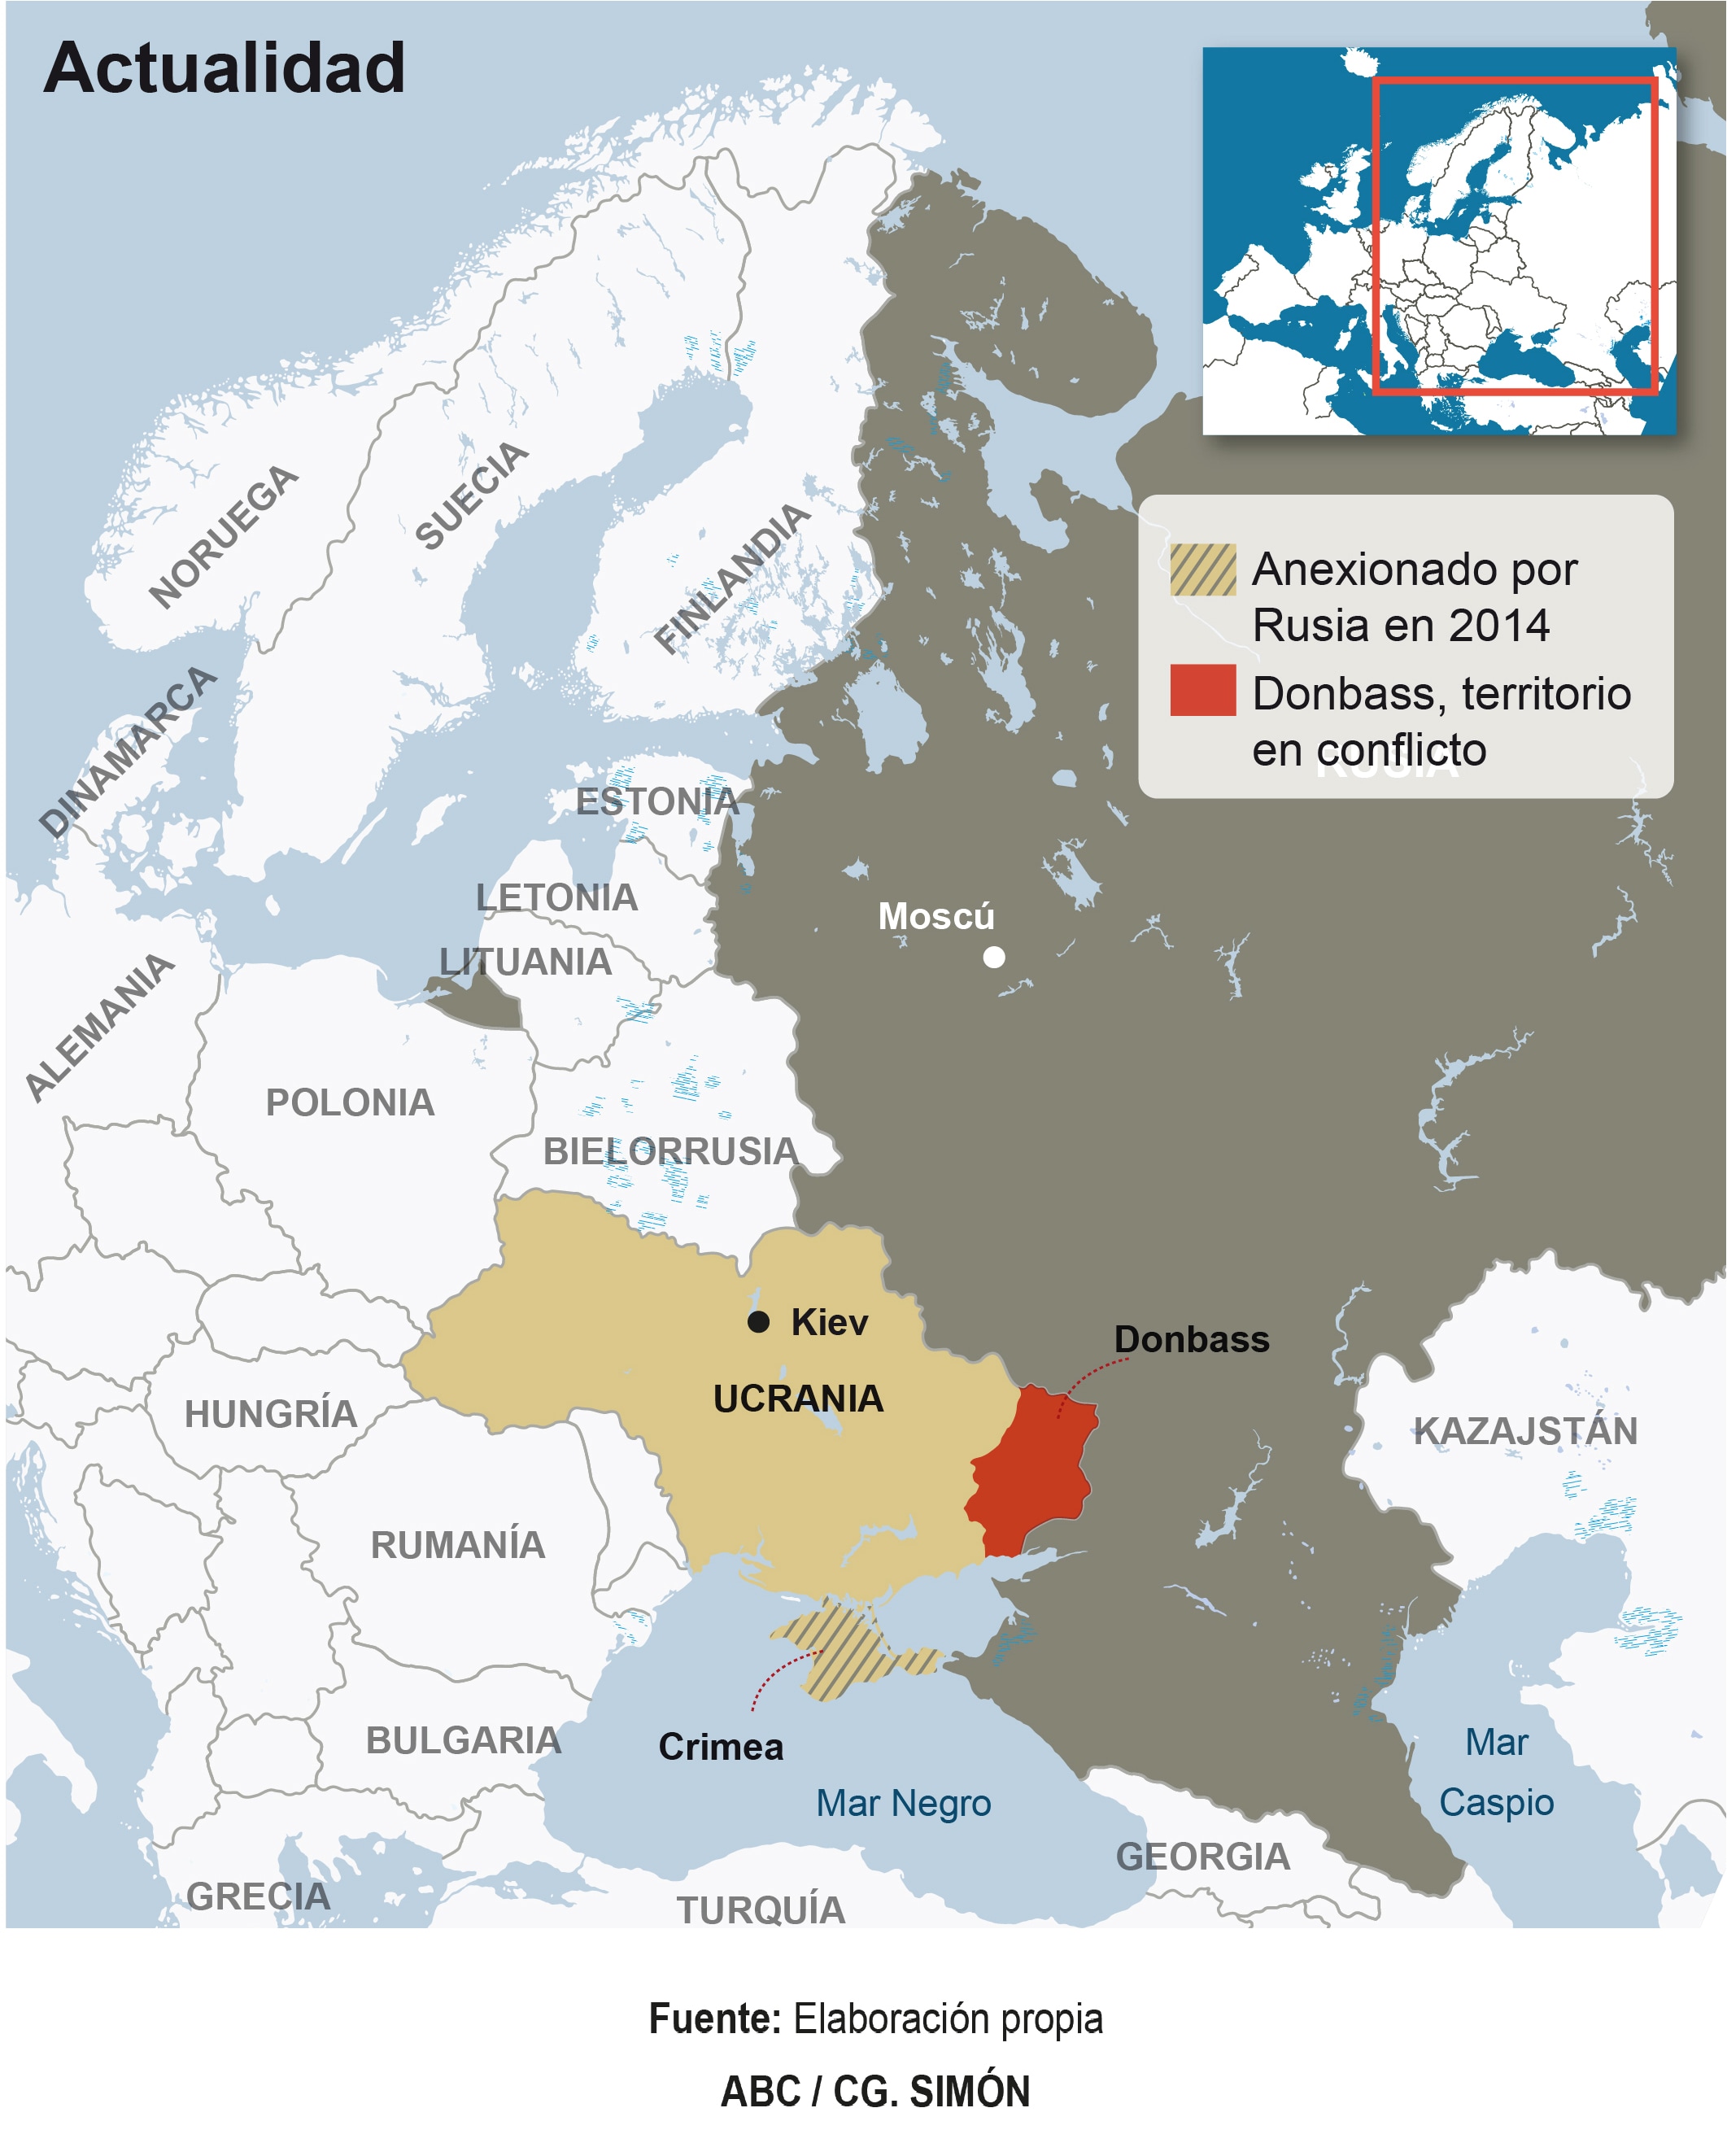 Ucrania, una tierra en permanente disputa en el corazón de Europa